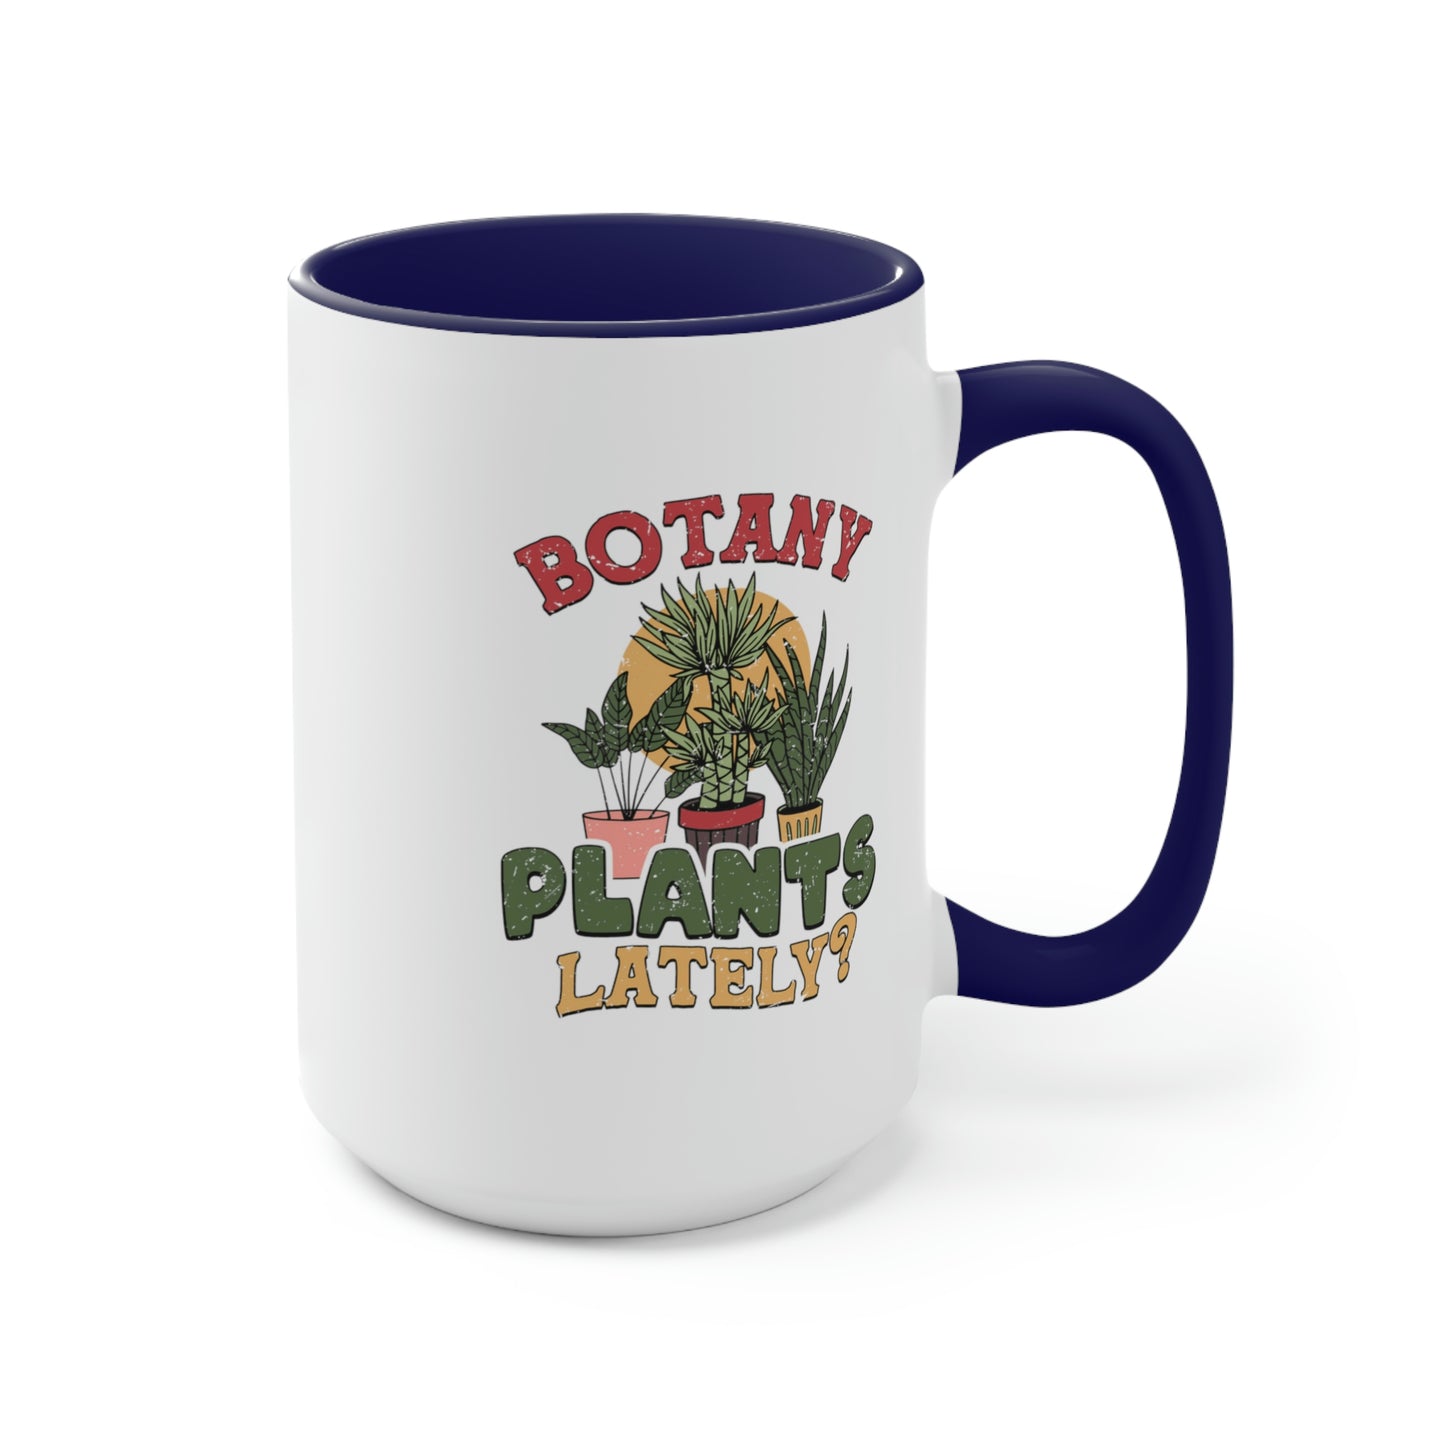 Botany plants lately Coffee Mugs, 15oz